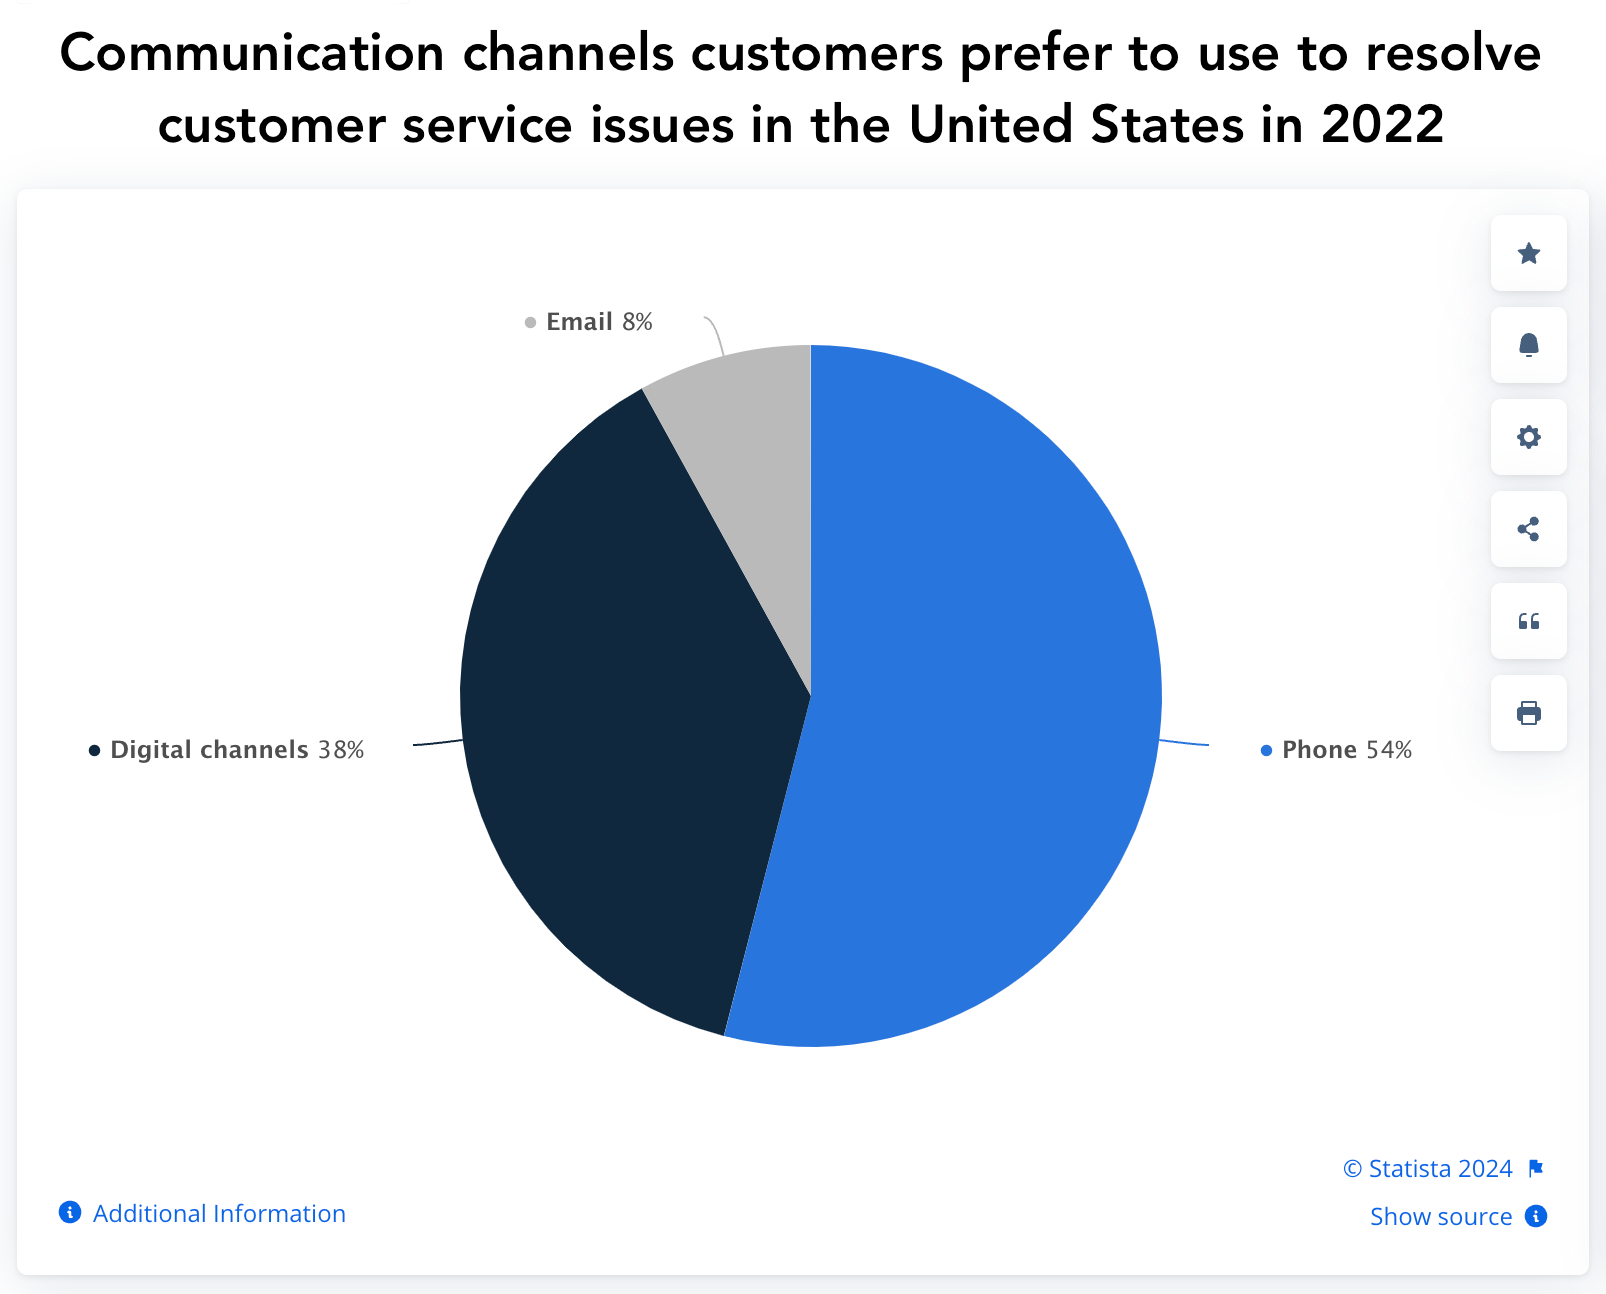 مخطط دائري Statista يوضح قنوات الاتصال التي يفضل العملاء استخدامها لحل المشكلات في الولايات المتحدة في عام 2022 - الهاتف والقنوات الرقمية والبريد الإلكتروني